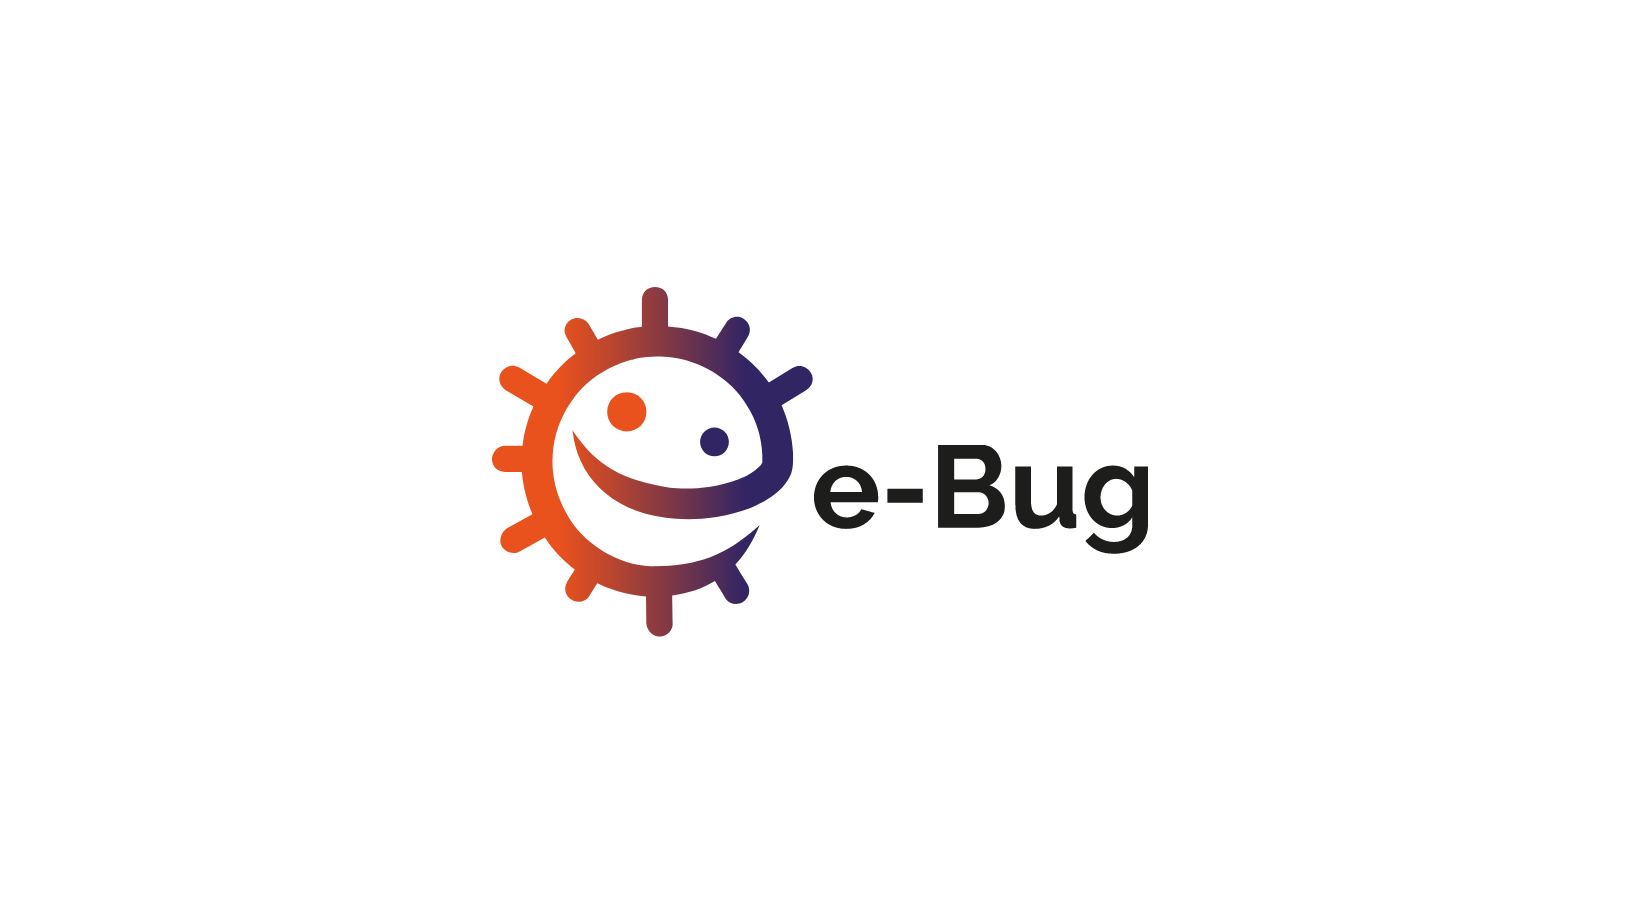 E-bug